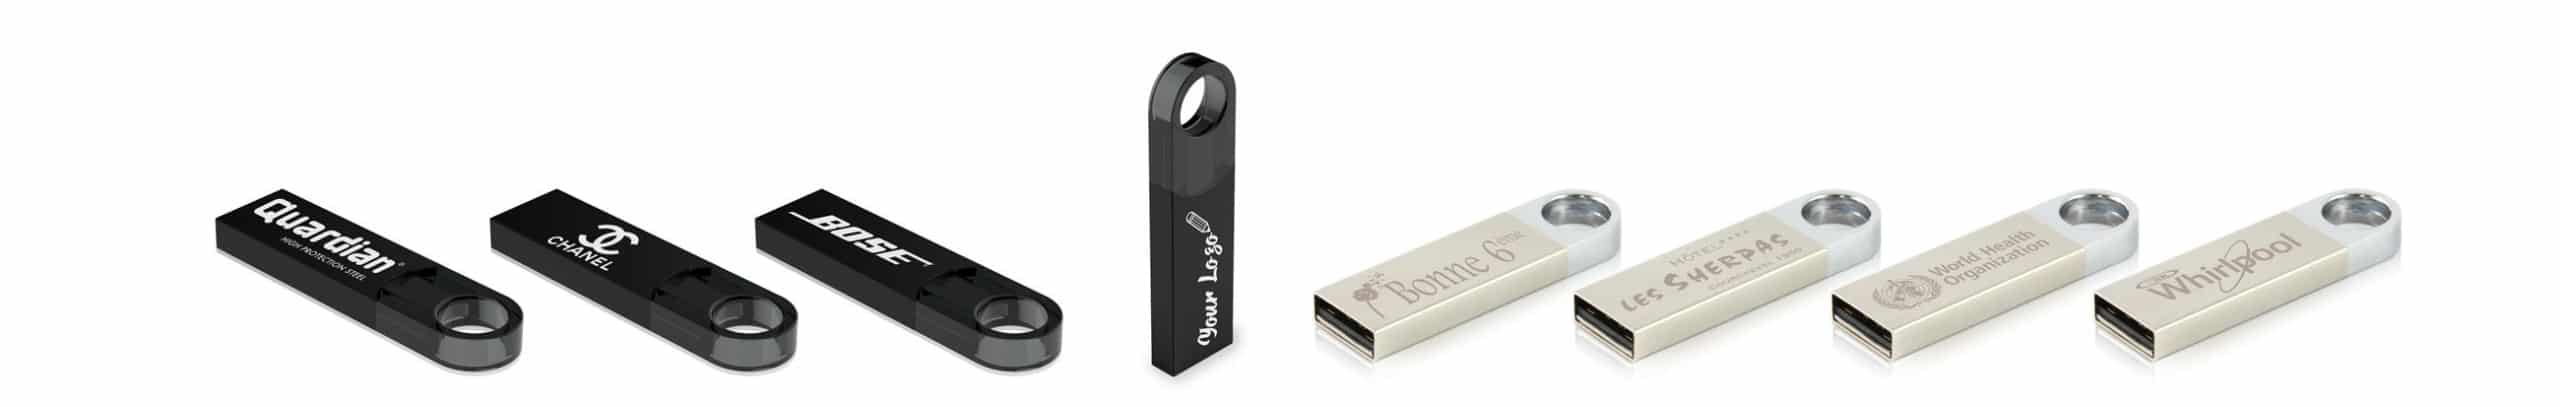 Ensemble de clés USB avec logo Unity et BlackUnity